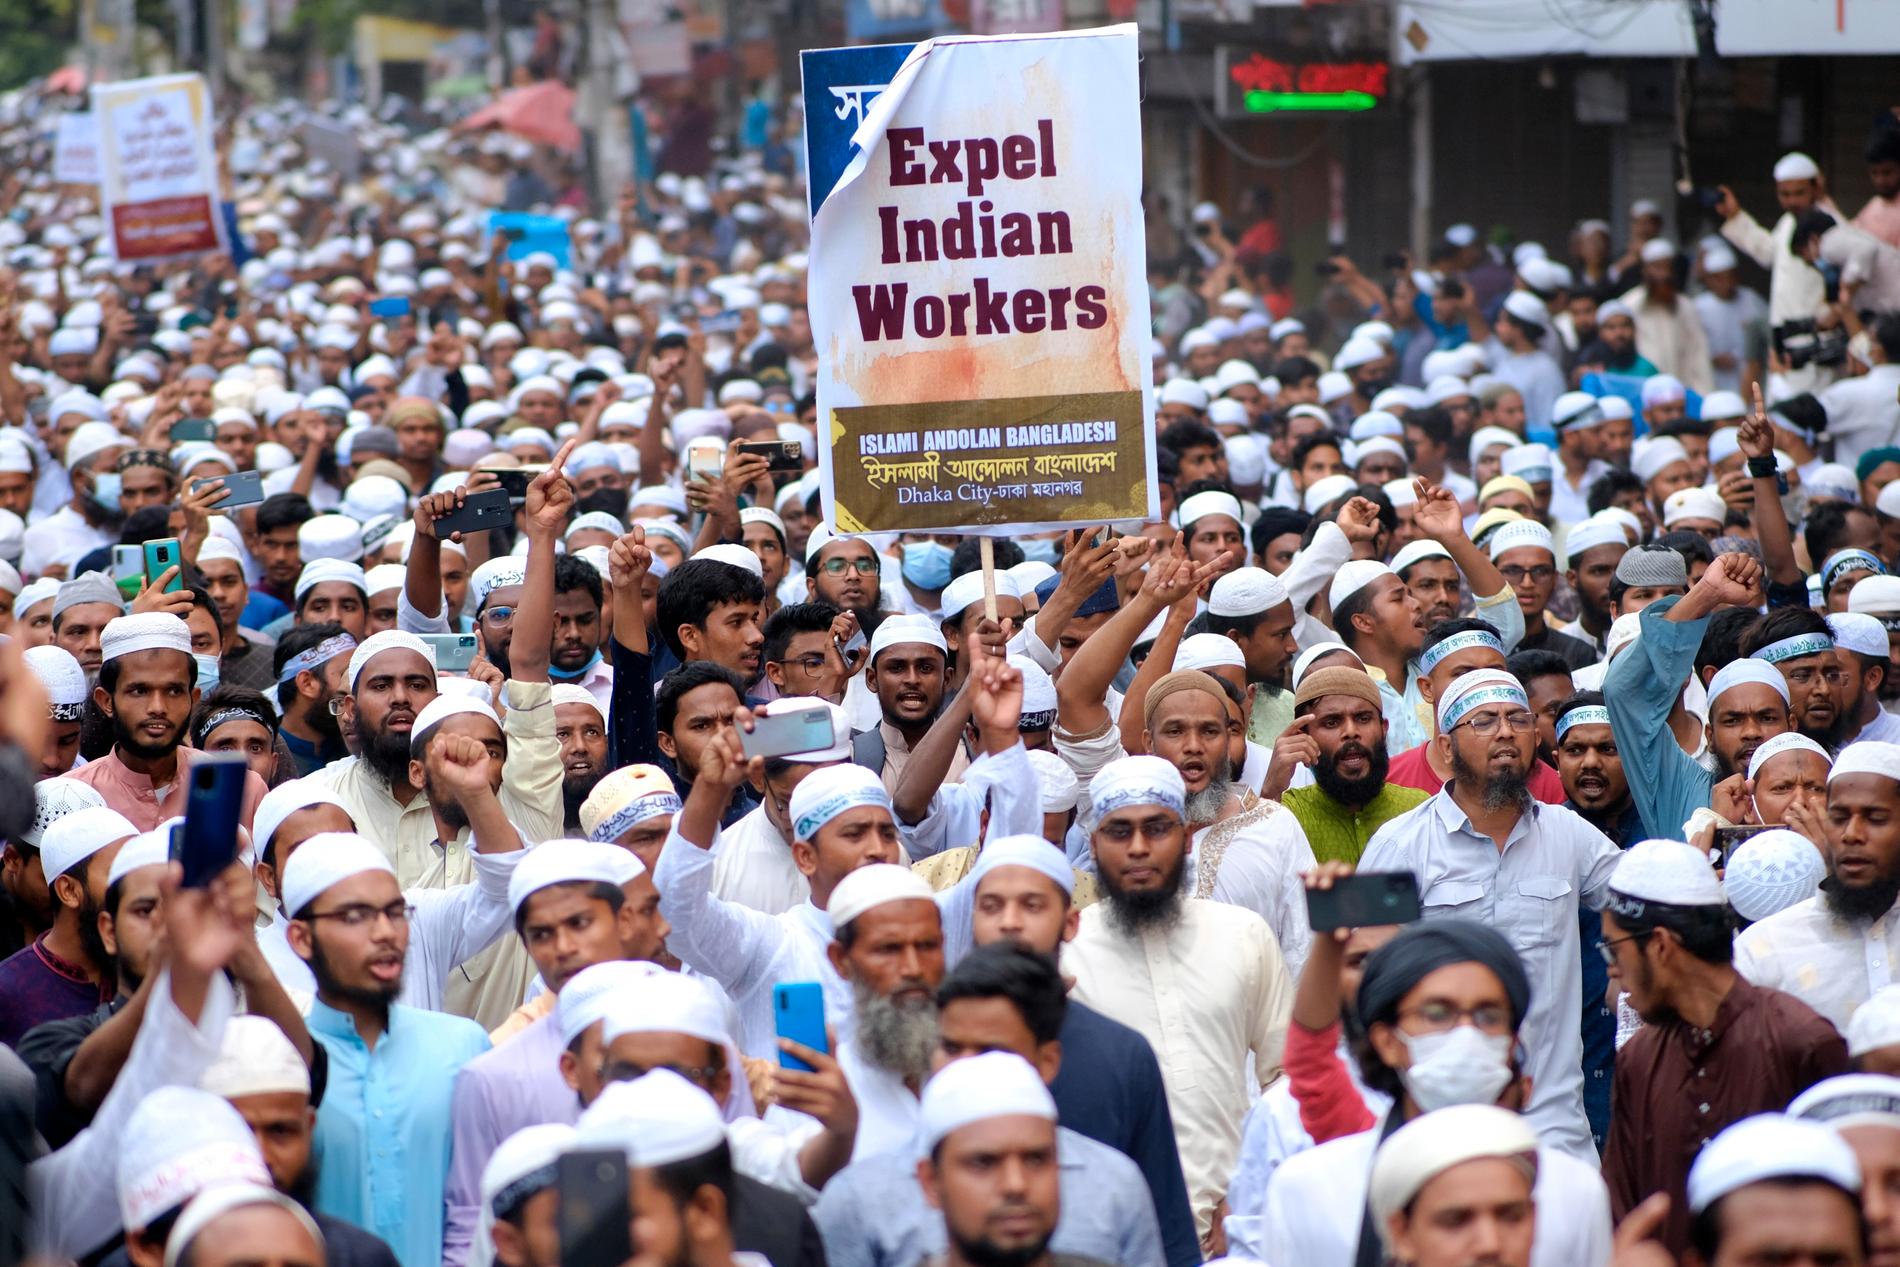 Tusentals muslimer demonstrerade mot den indiska regeringen i Dhaka i Bangladesh under fredagen.